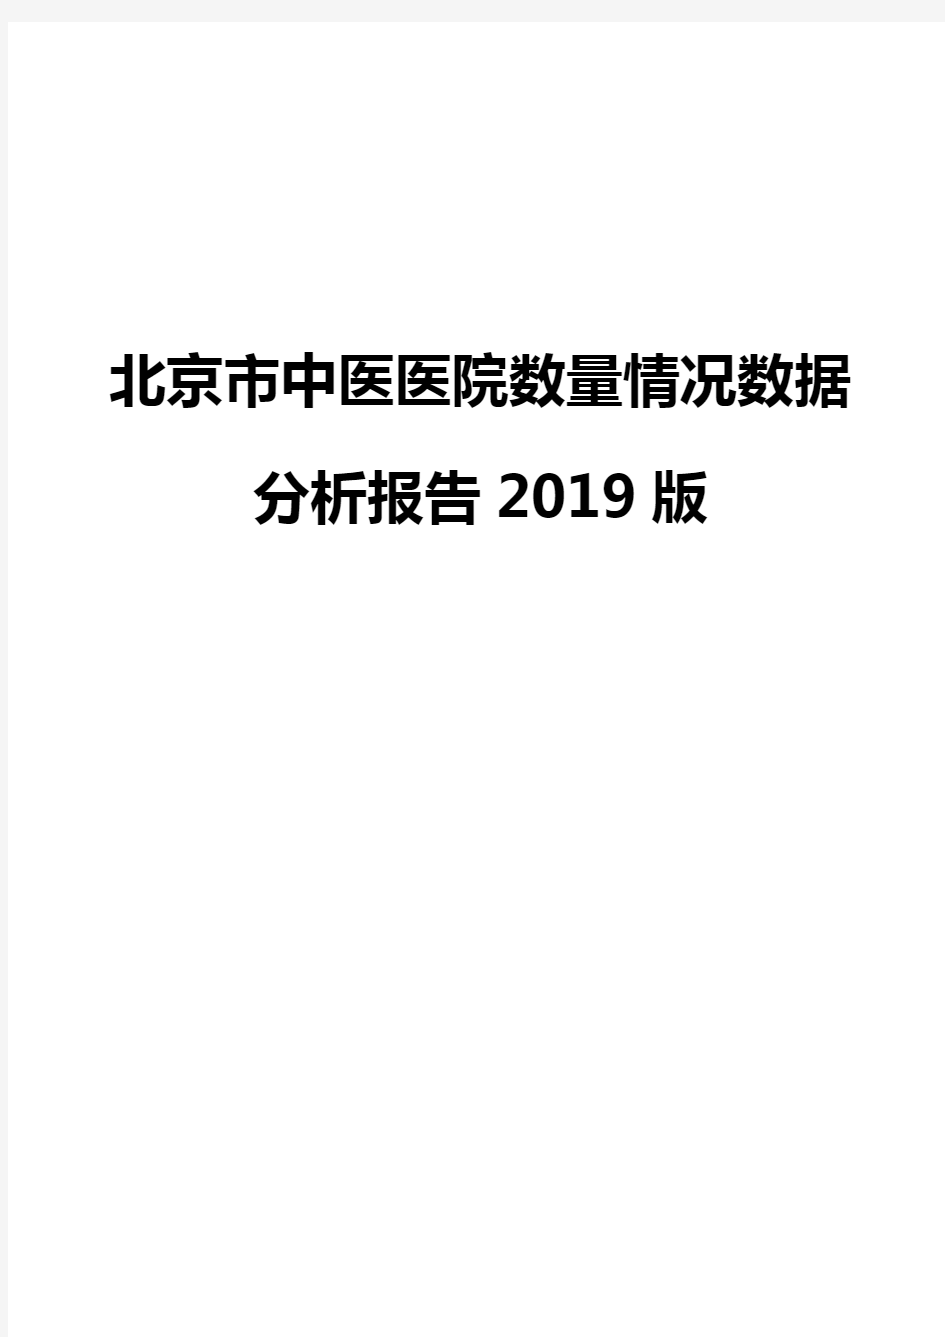 北京市中医医院数量情况数据分析报告2019版